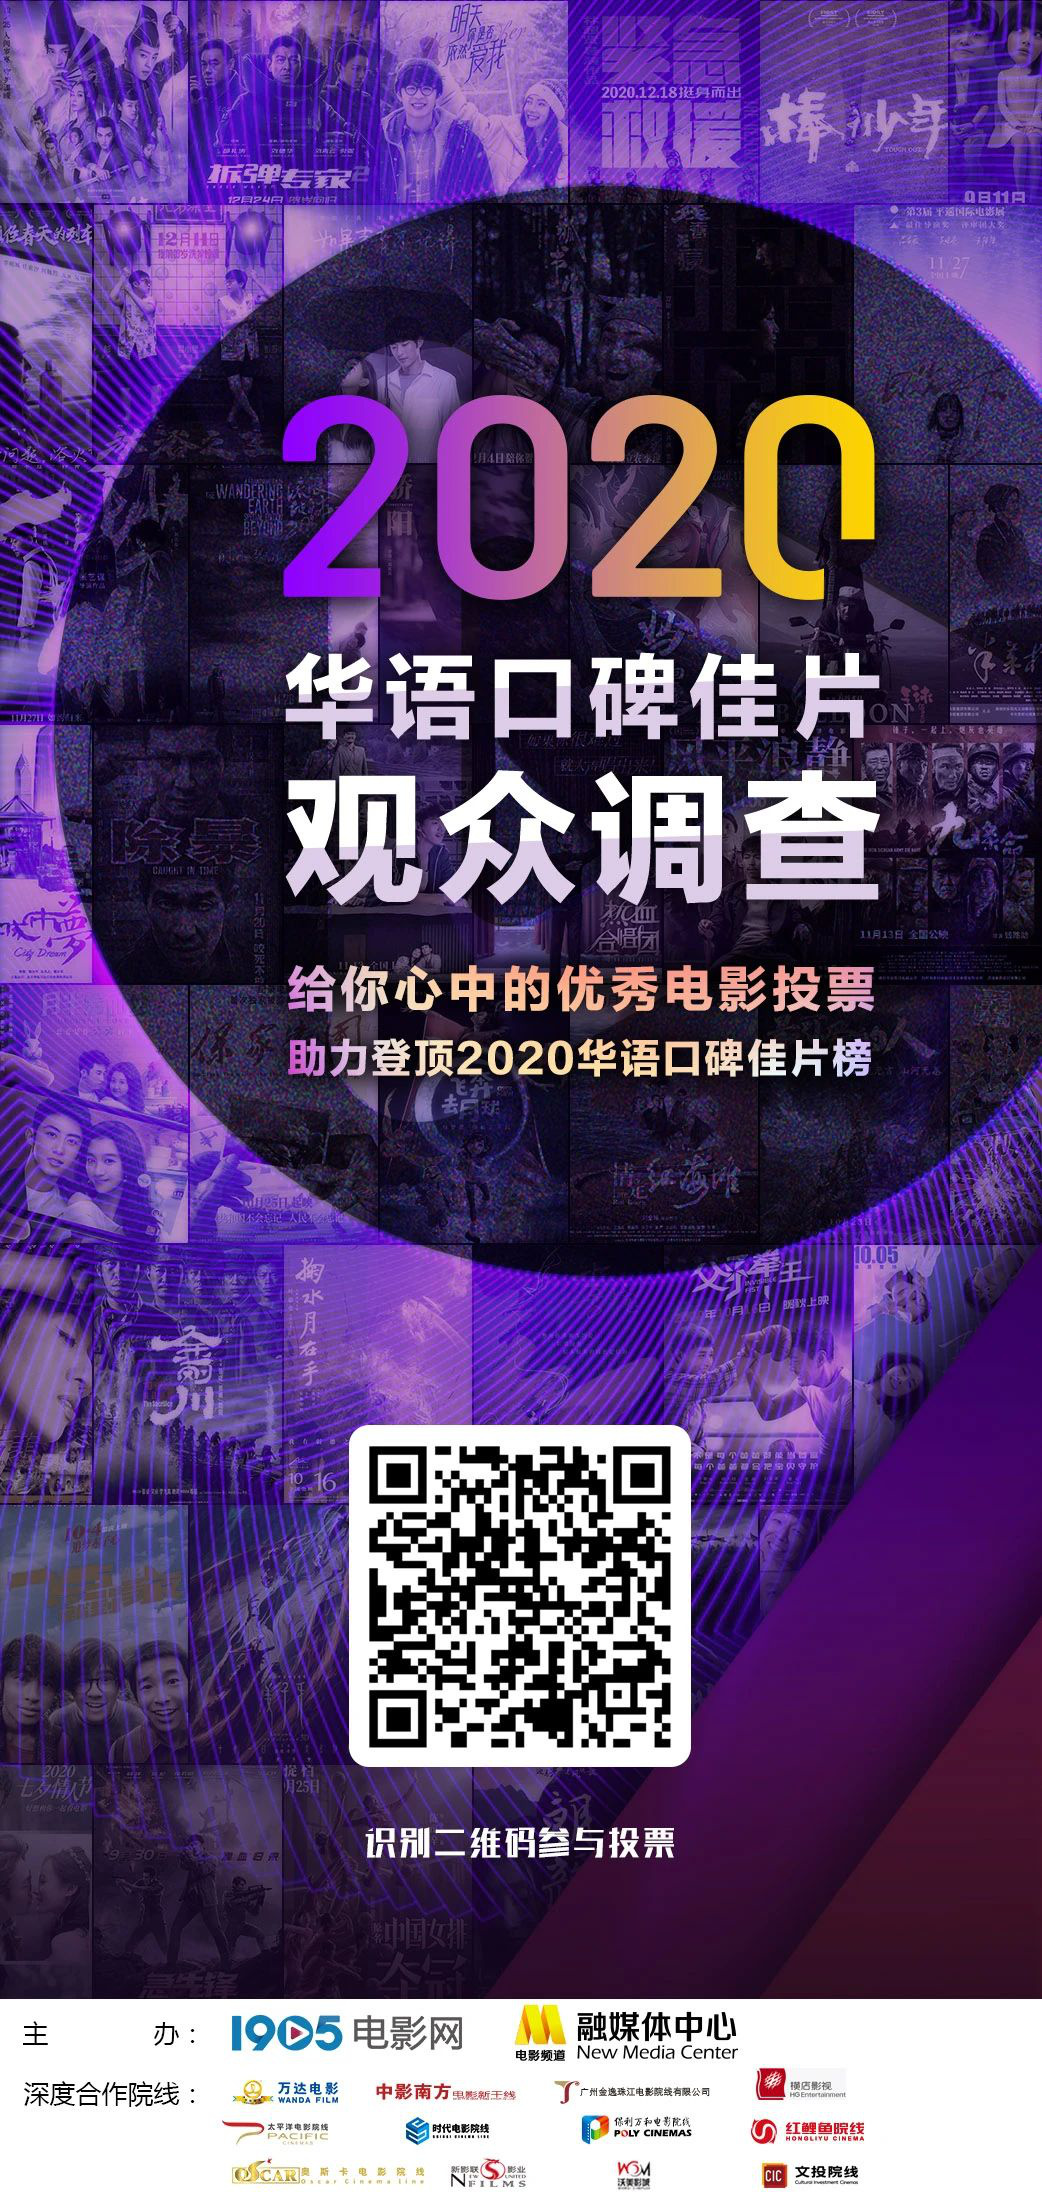 2020华语佳片调查开启 电影频道邀您晒出年度片单